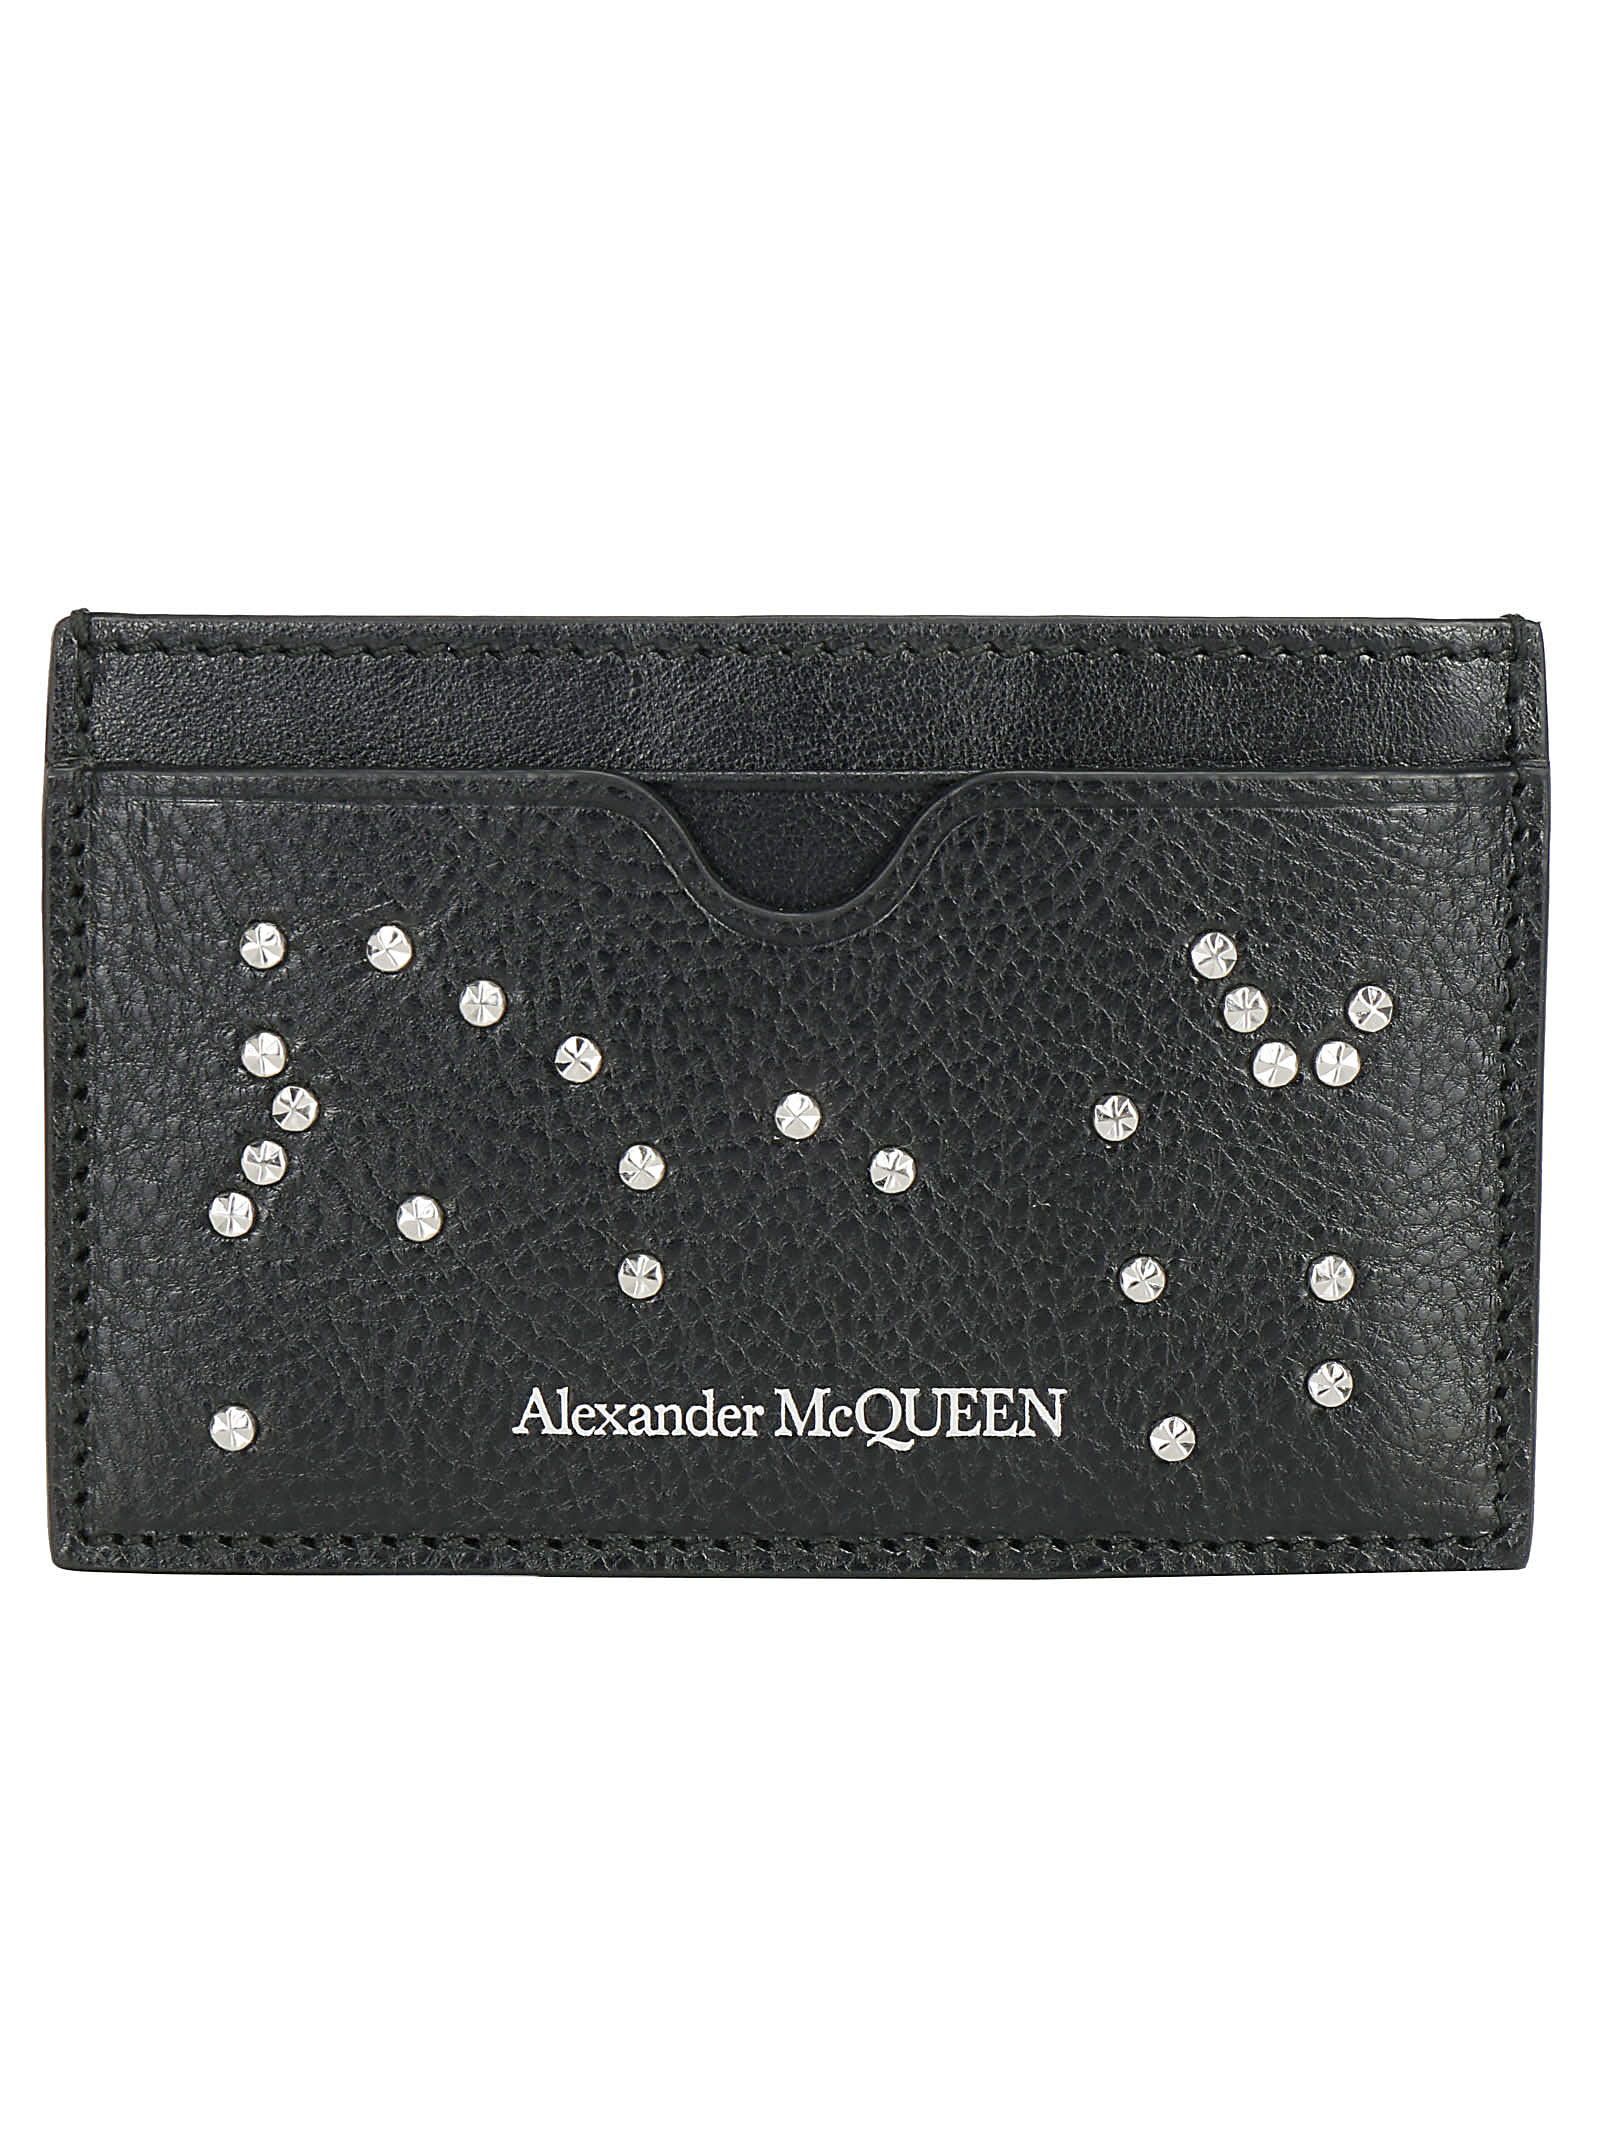 Alexander McQueen Wallets | italist 